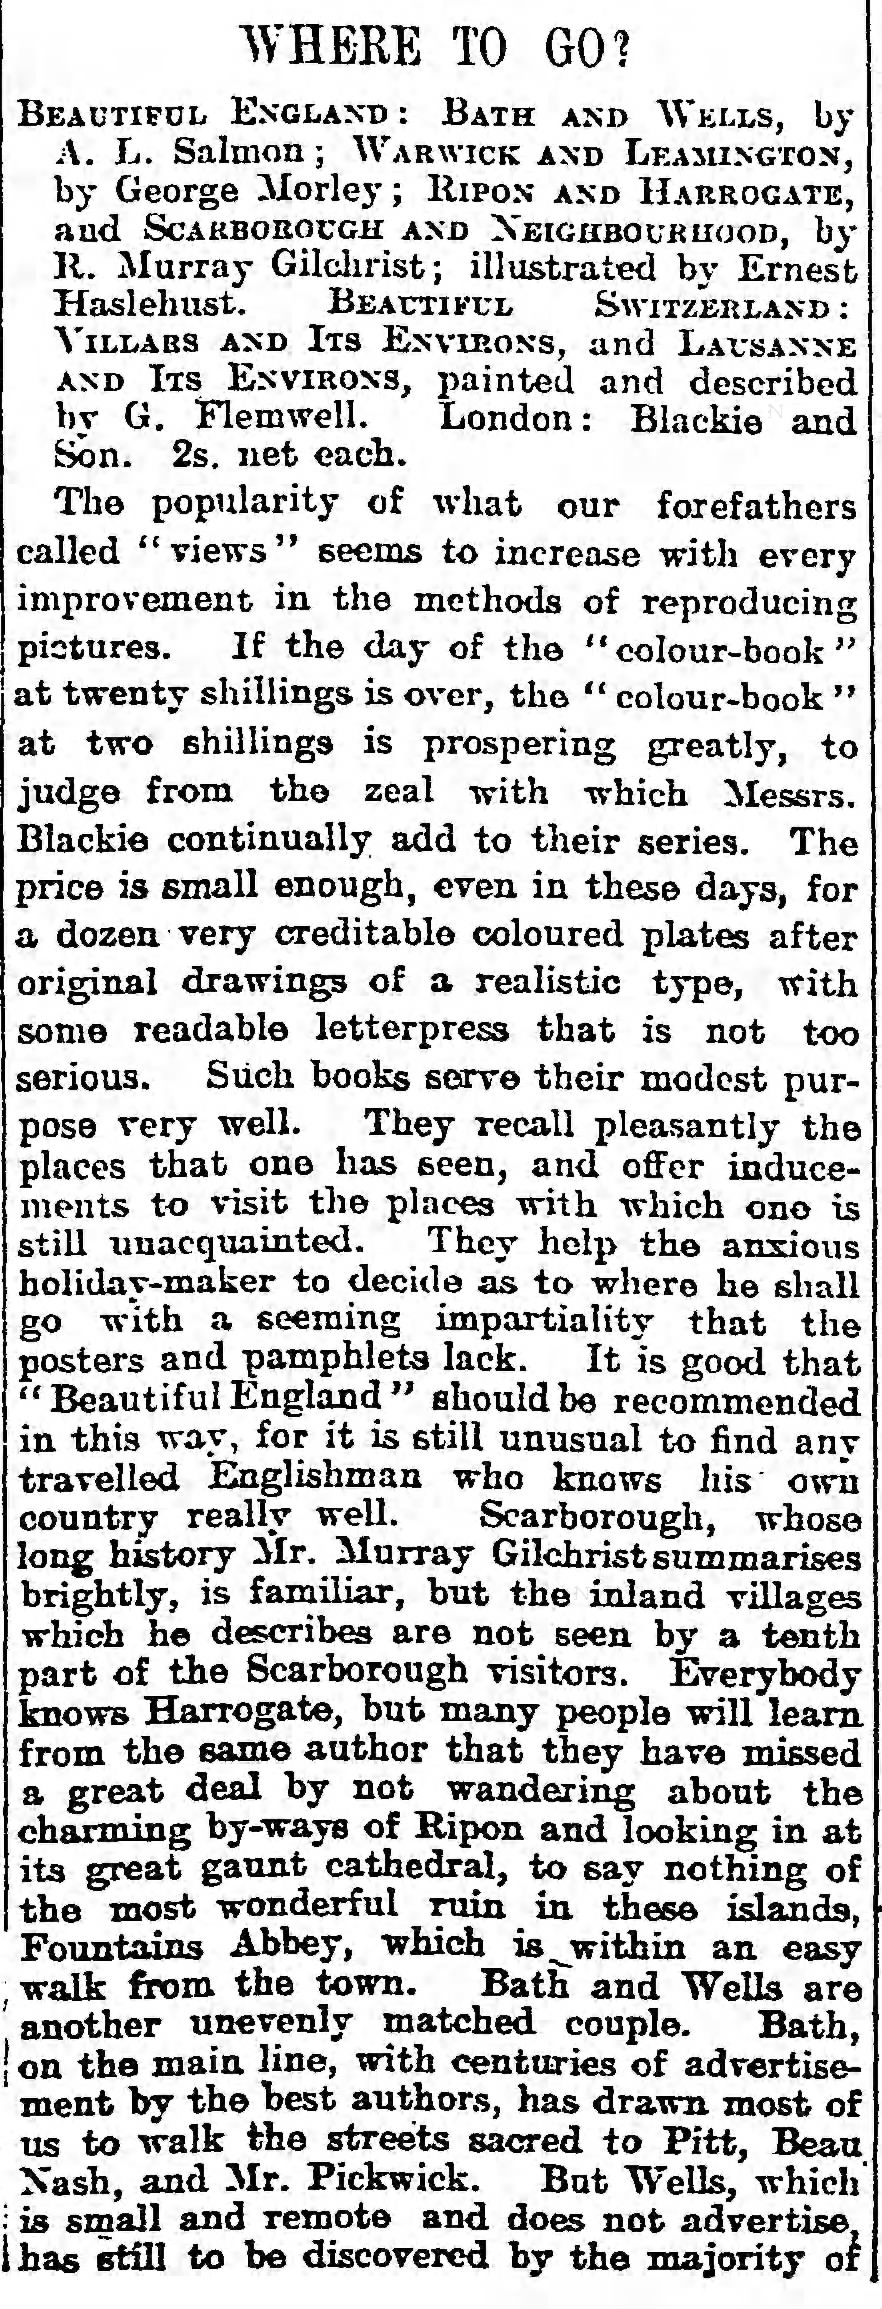 Article re Beautiful England, Beautiful Switzerland series, Guardian, 19 May 1914 (image 1)